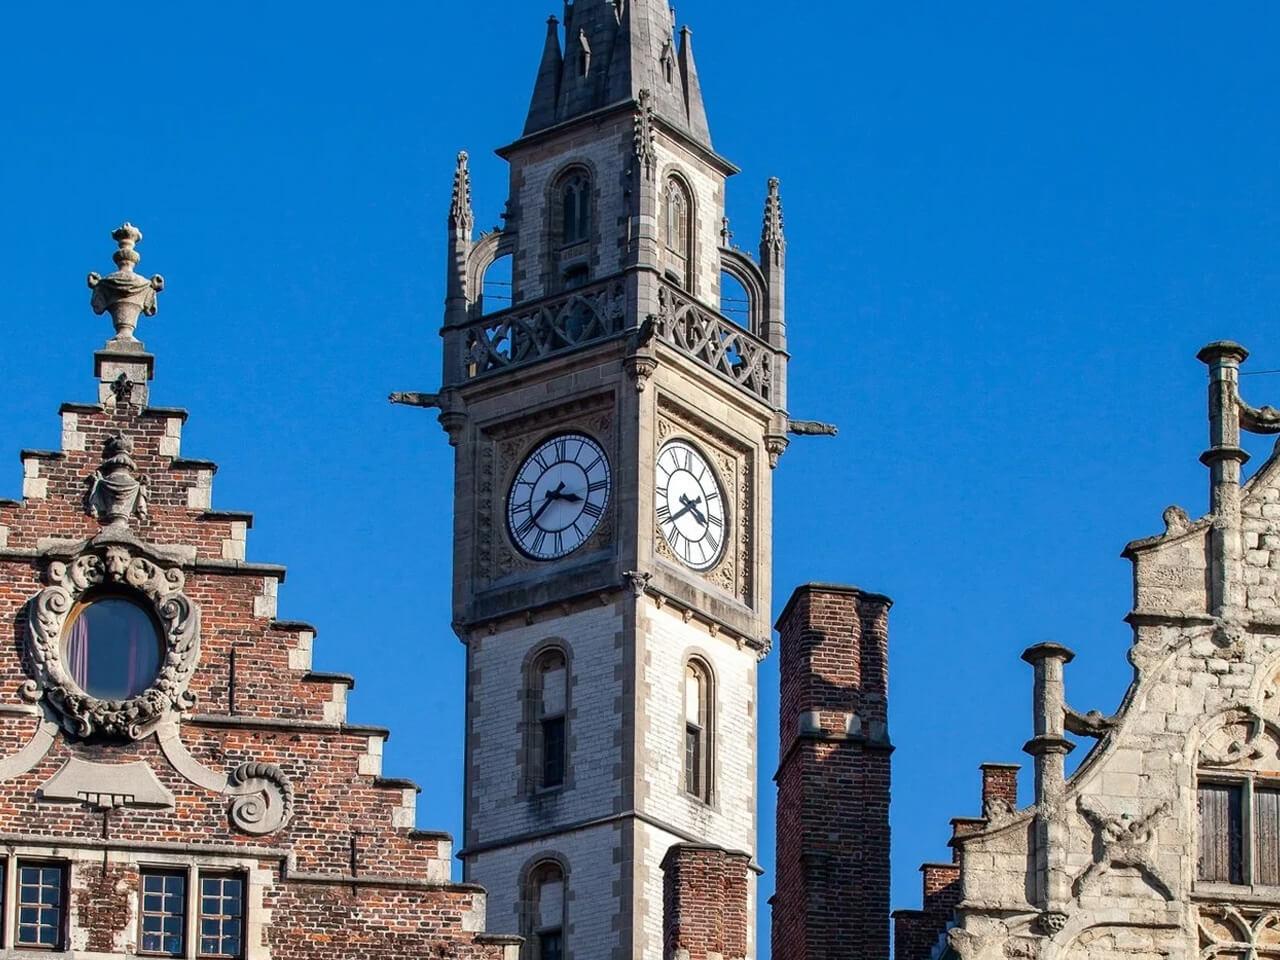 教会の時計塔